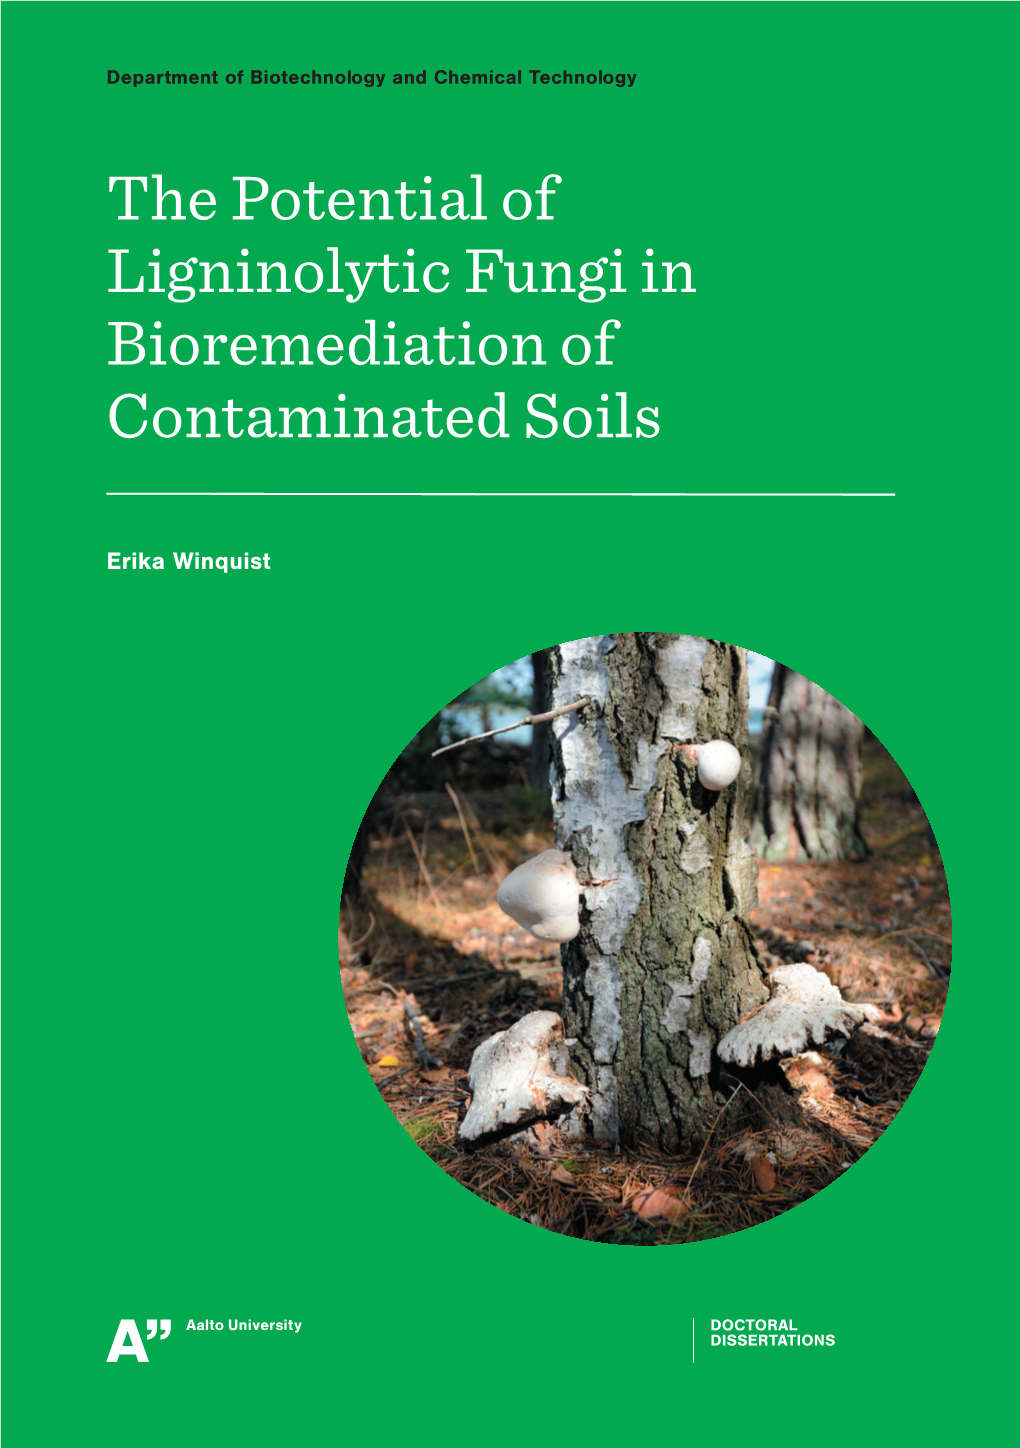 Thepotentialof Ligninolyticfungi in Bioremediation of Contaminated Soils